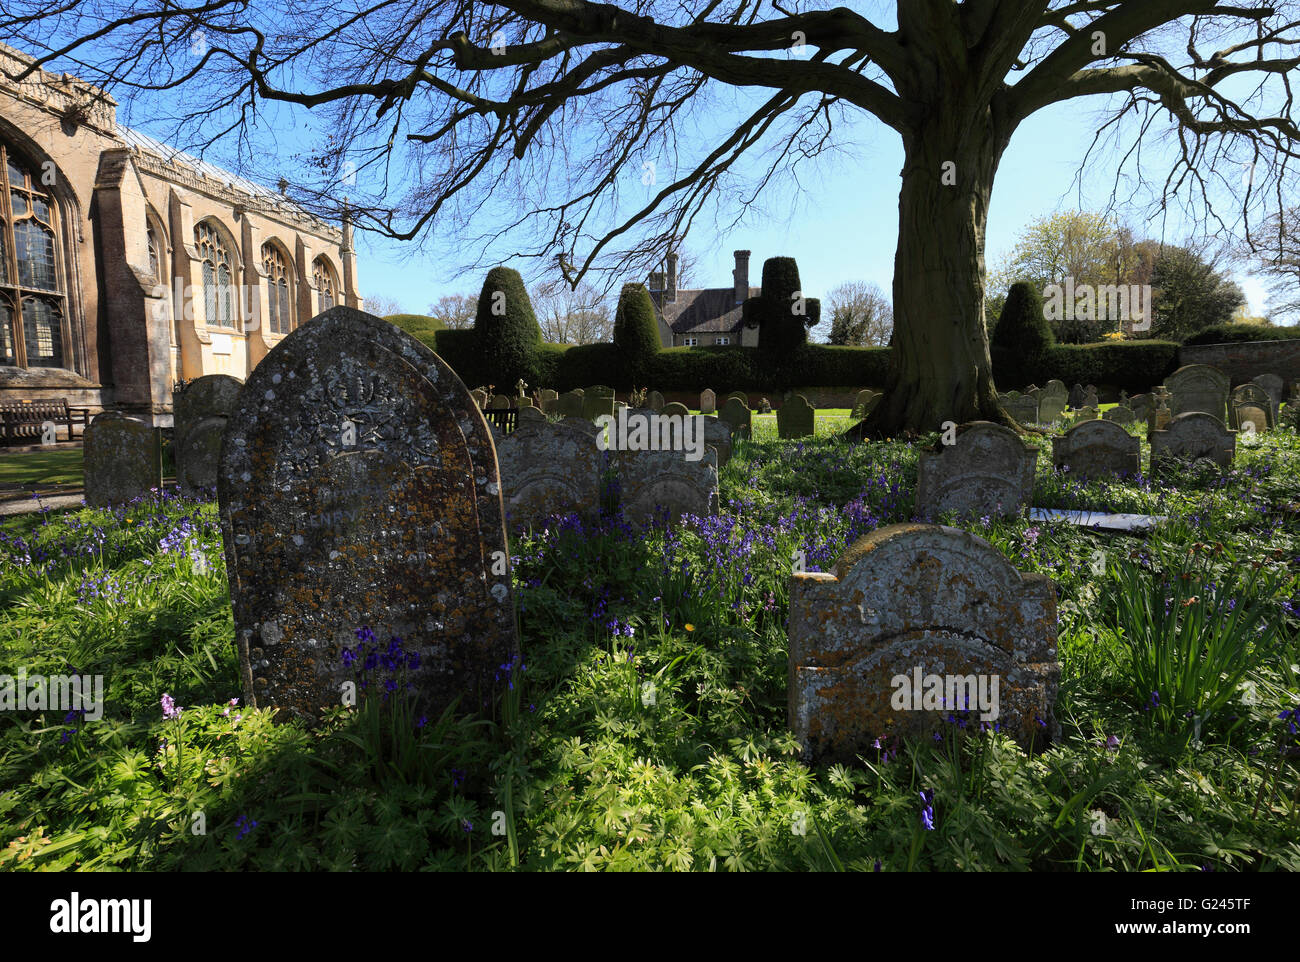 Grabsteine und Glockenblumen auf dem Friedhof von Walpole St Peter, Norfolk, England, UK. Stockfoto